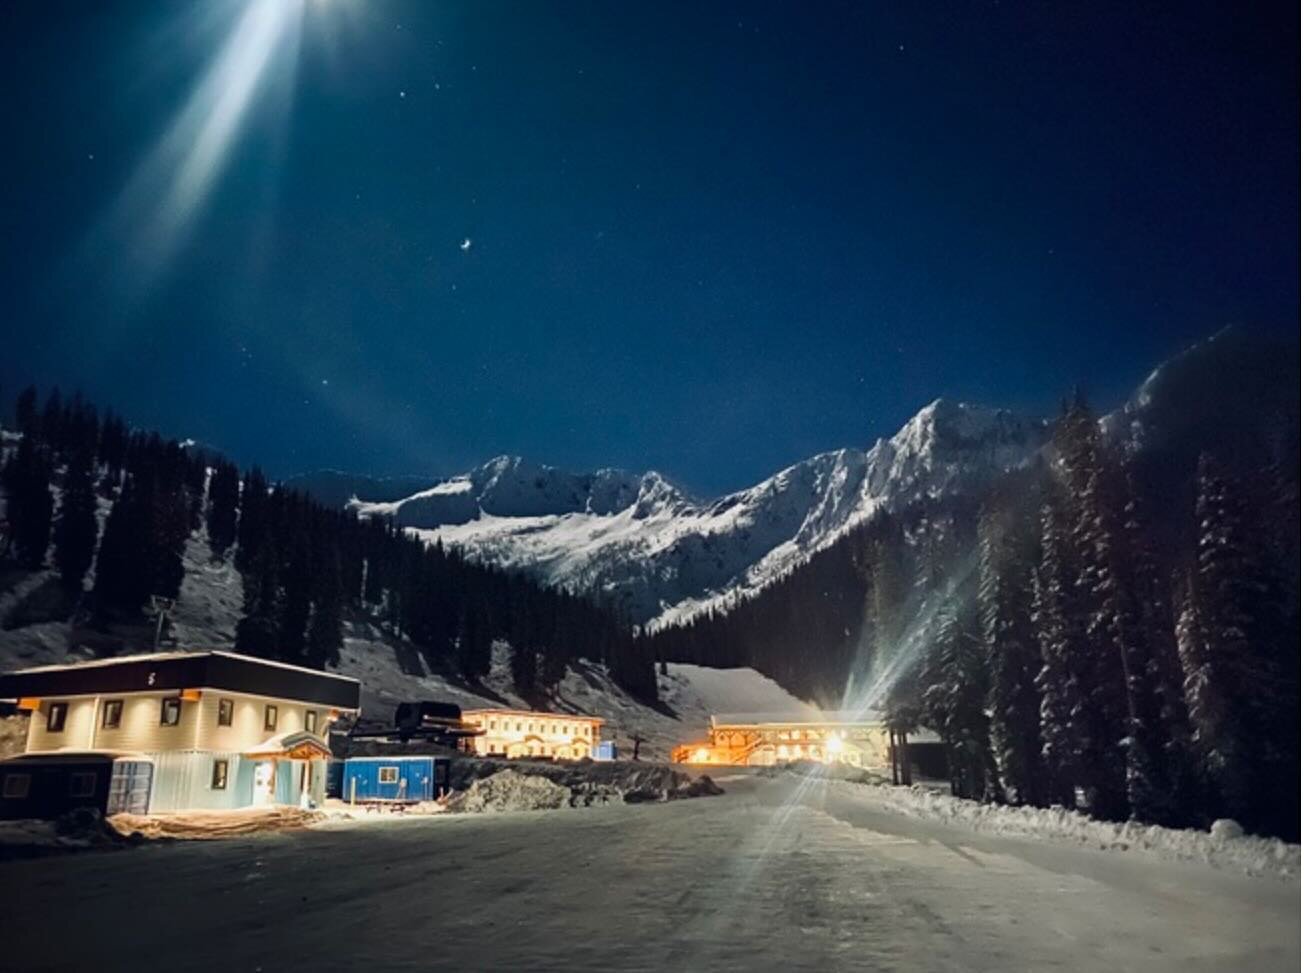 Let it snow! Whitewater Ski Resort at night! ⛷️⛄️❄️🎿